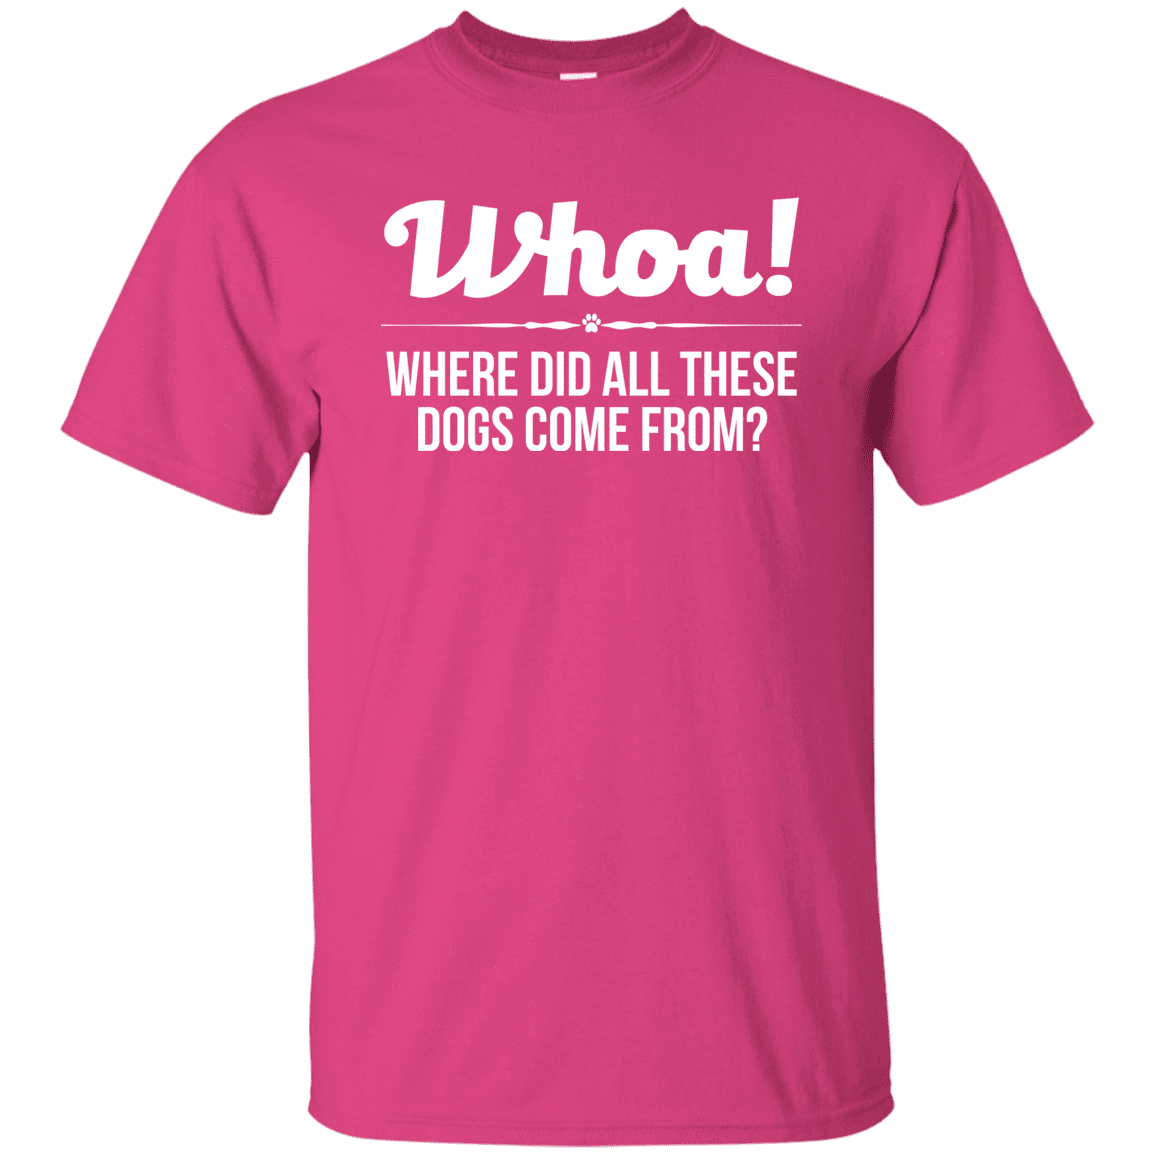 Whoa! - T Shirt.